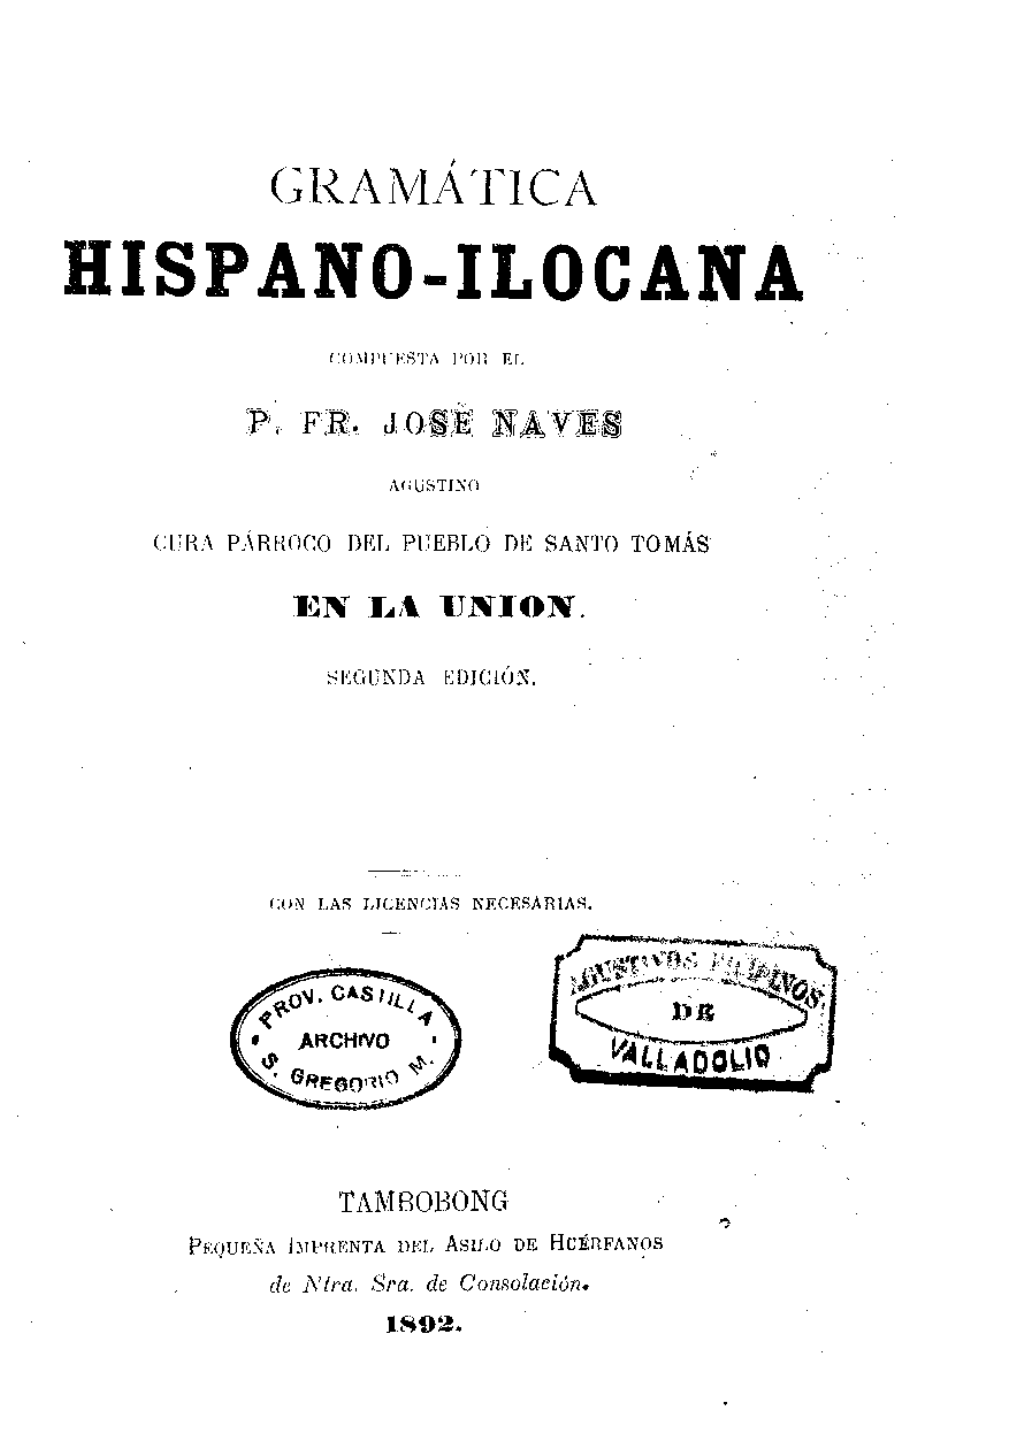 Hispano-Ilocana